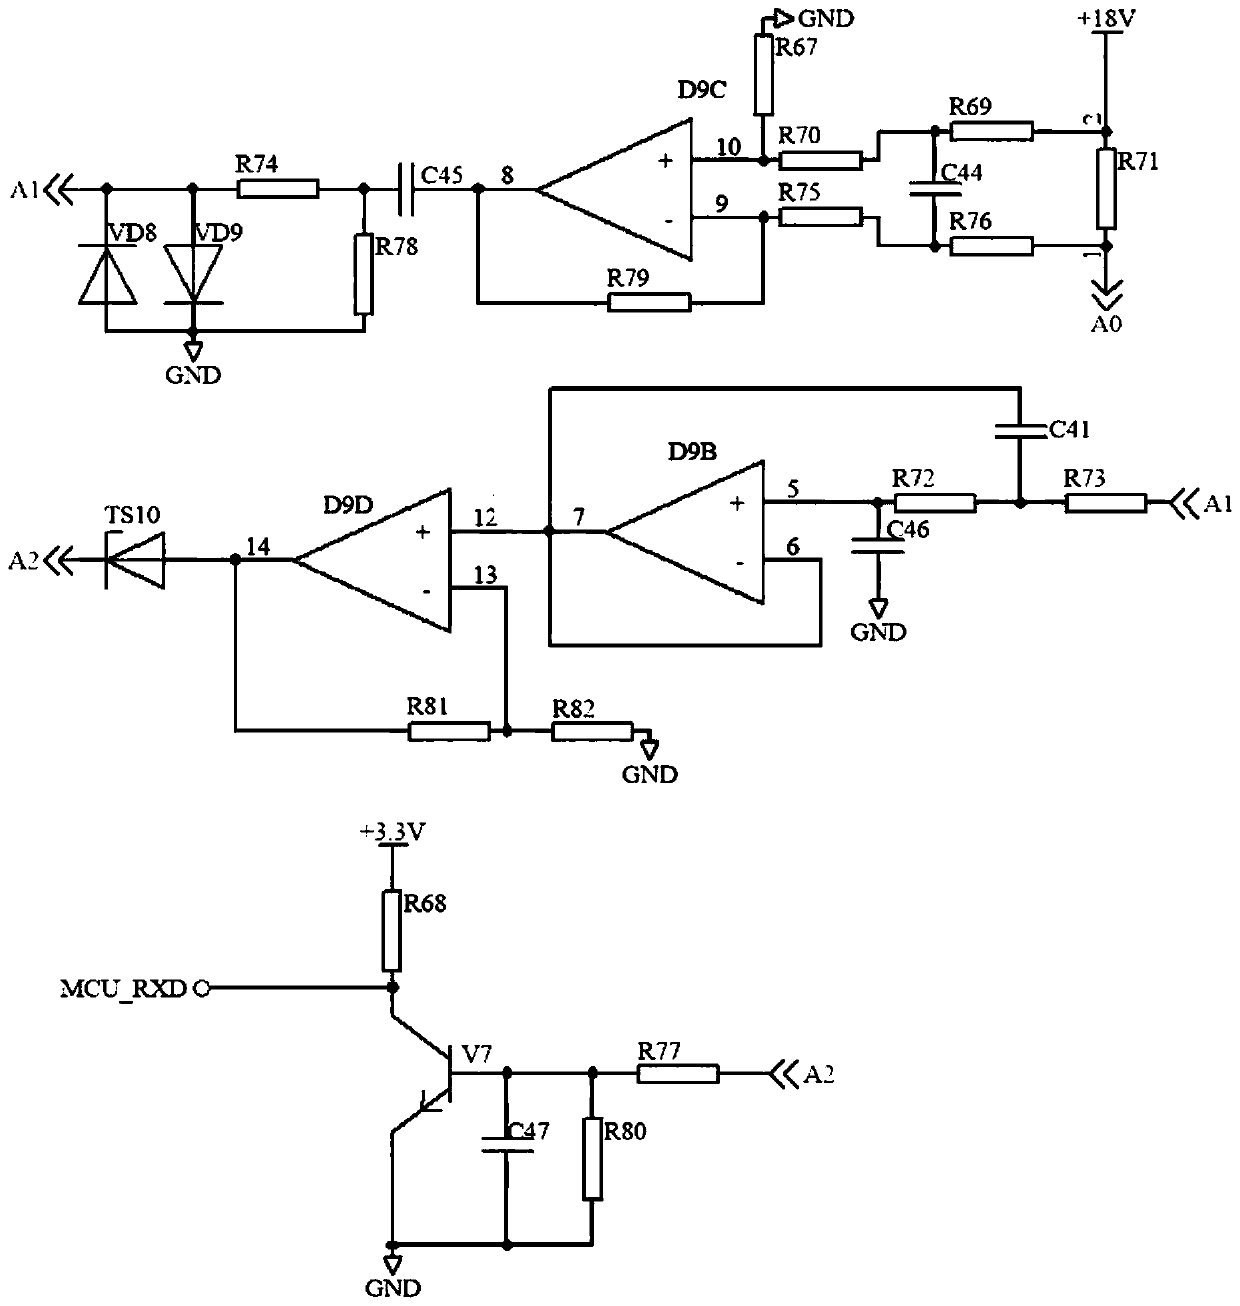 M-BUS host transmit-receive circuit